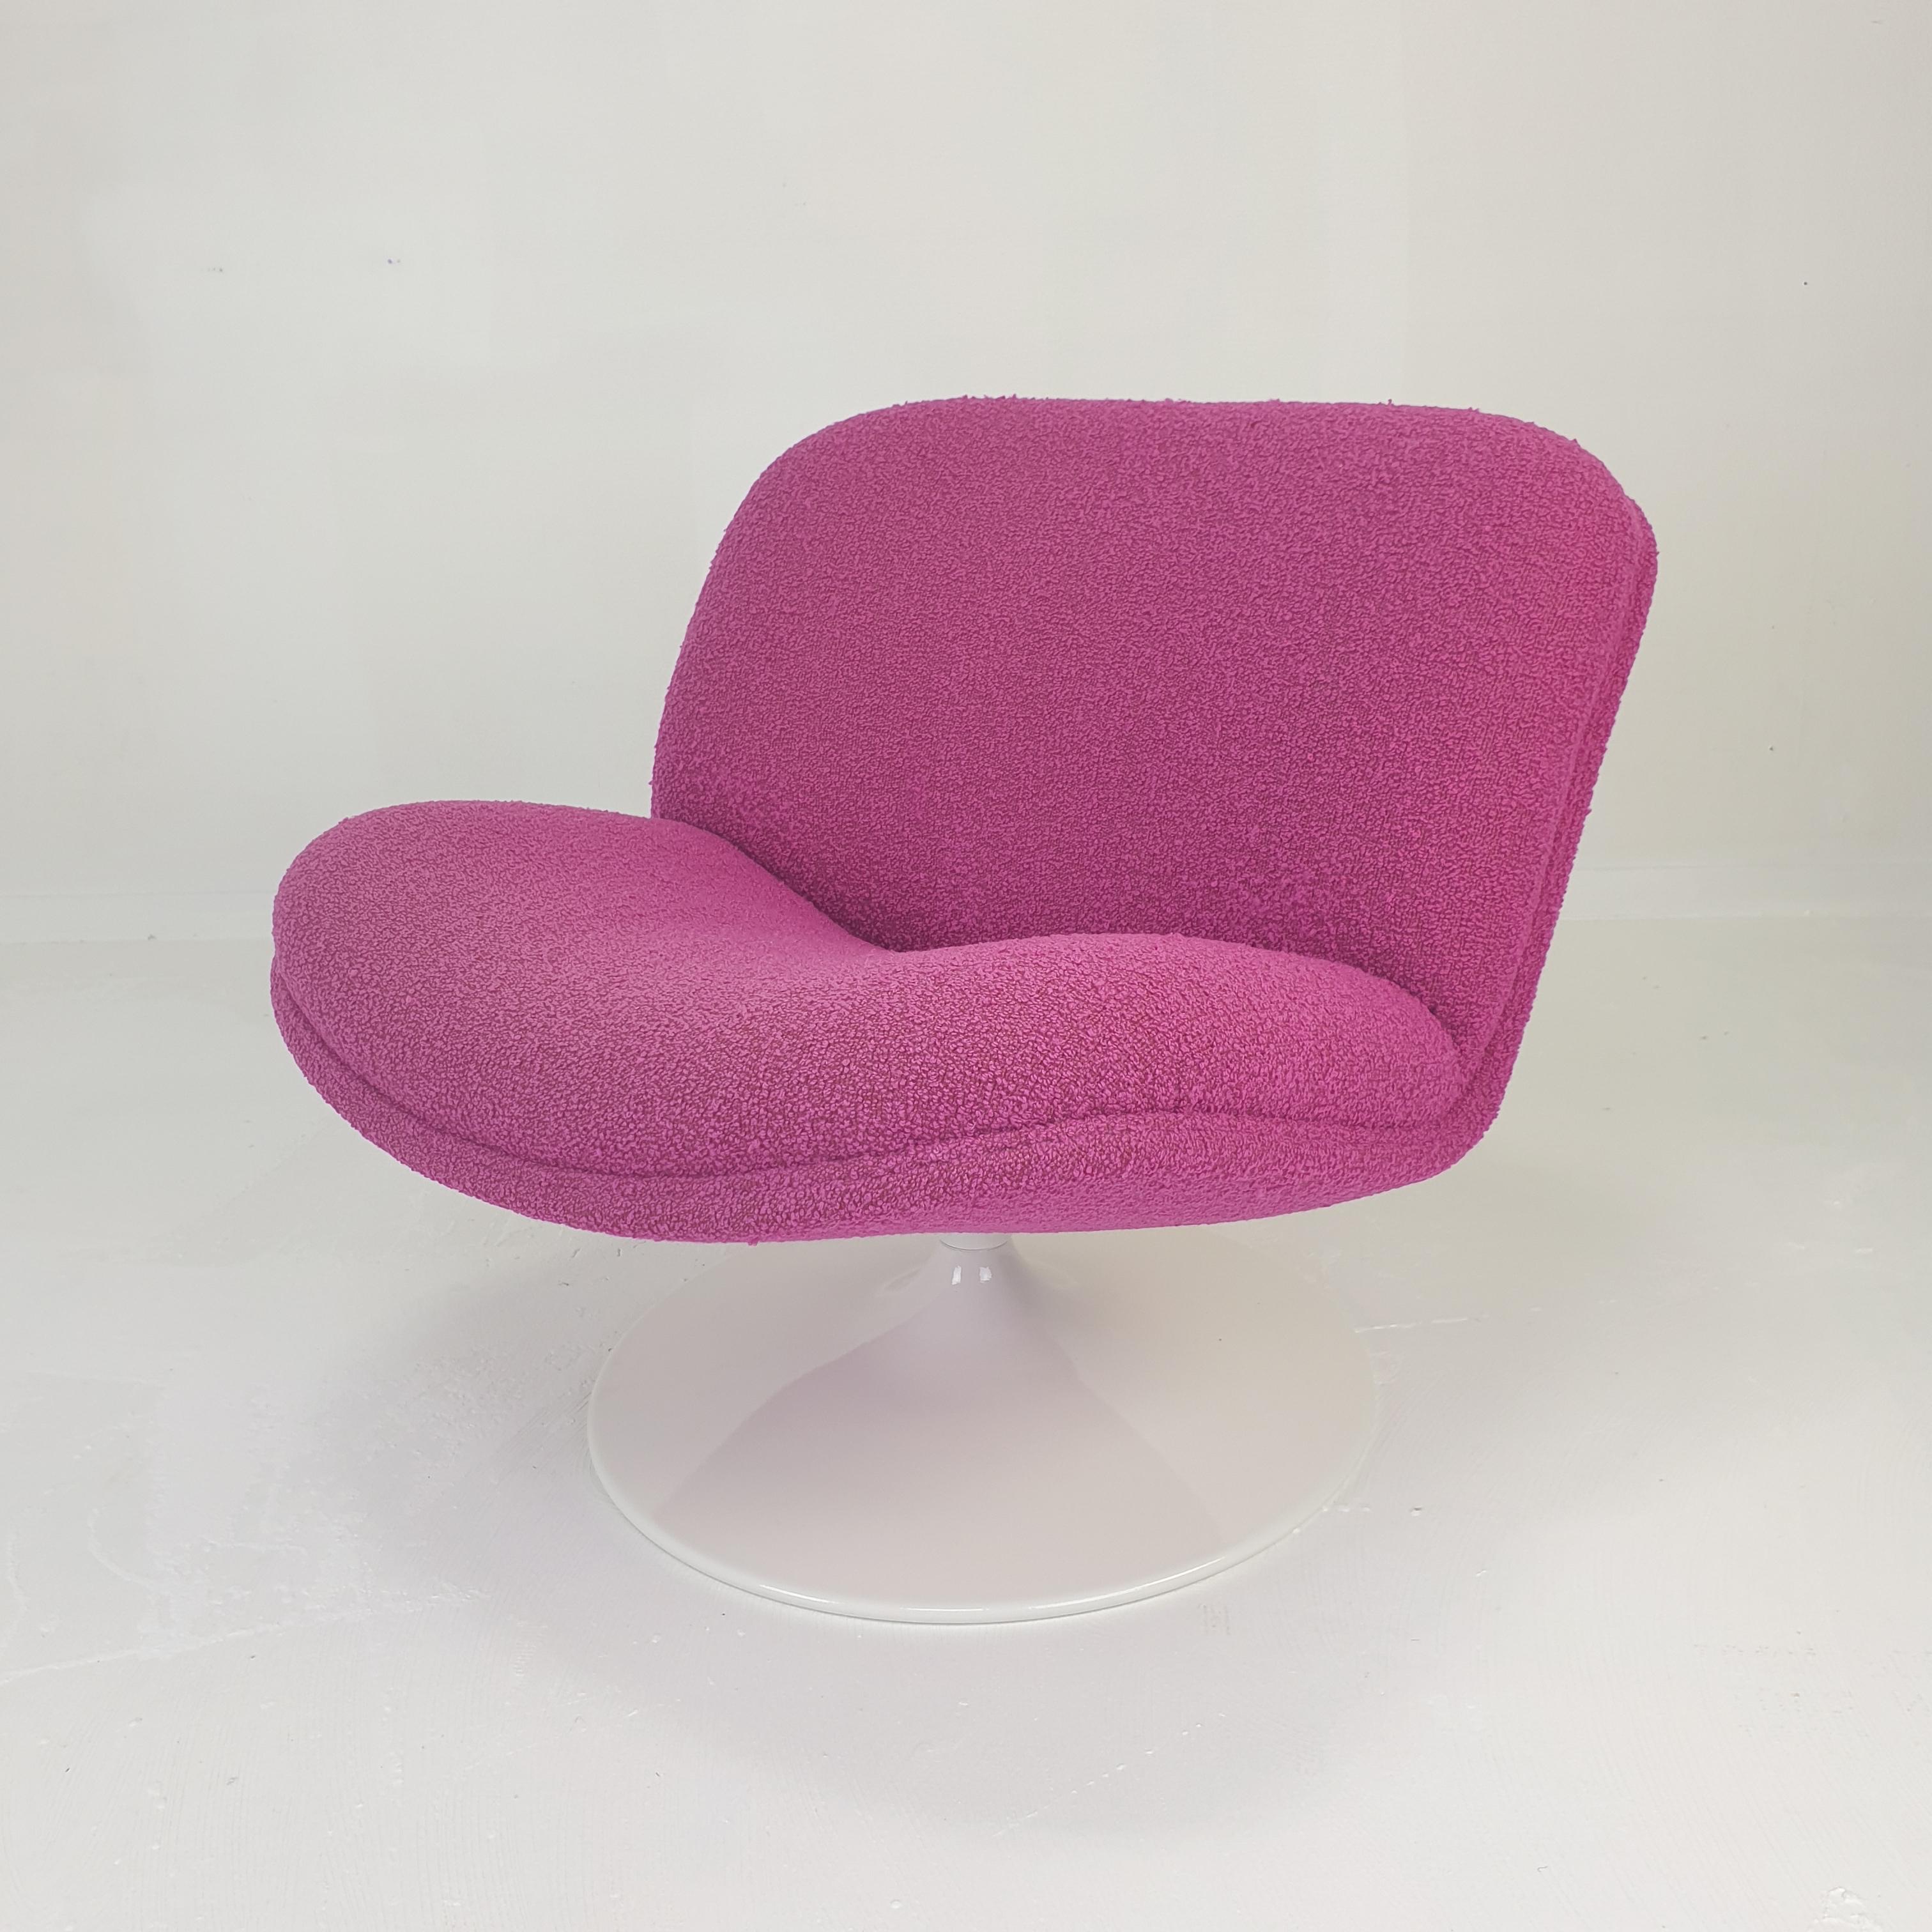 Sehr hübscher und bequemer Lounge Chair, entworfen von Geoffrey Harcourt für Artifort in den 70er Jahren.
Er hat einen drehbaren Metallfuß. 

Er wurde gerade mit einem schönen Bouclé-Stoff neu gepolstert und der Fuß wurde lackiert.